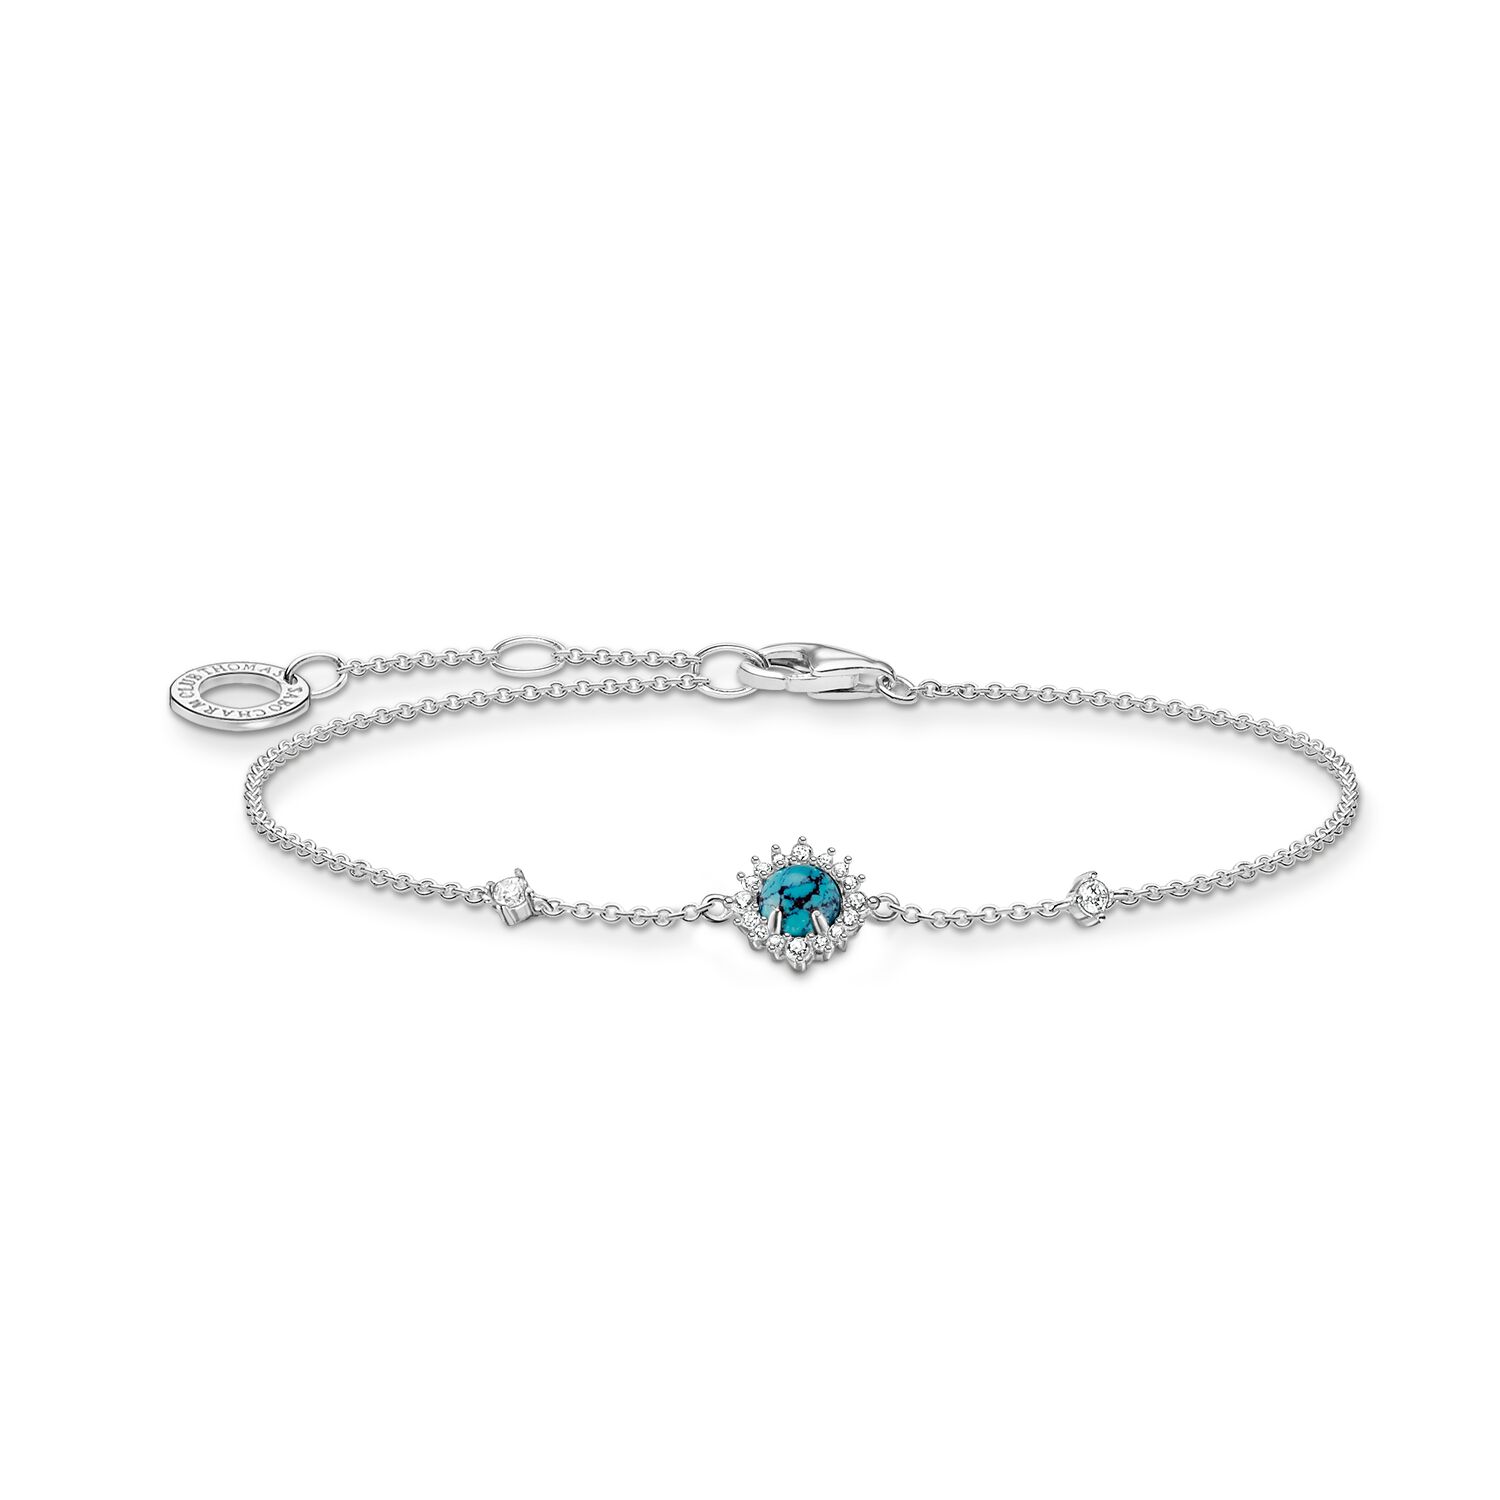 Unique silver bracelet with blue stone